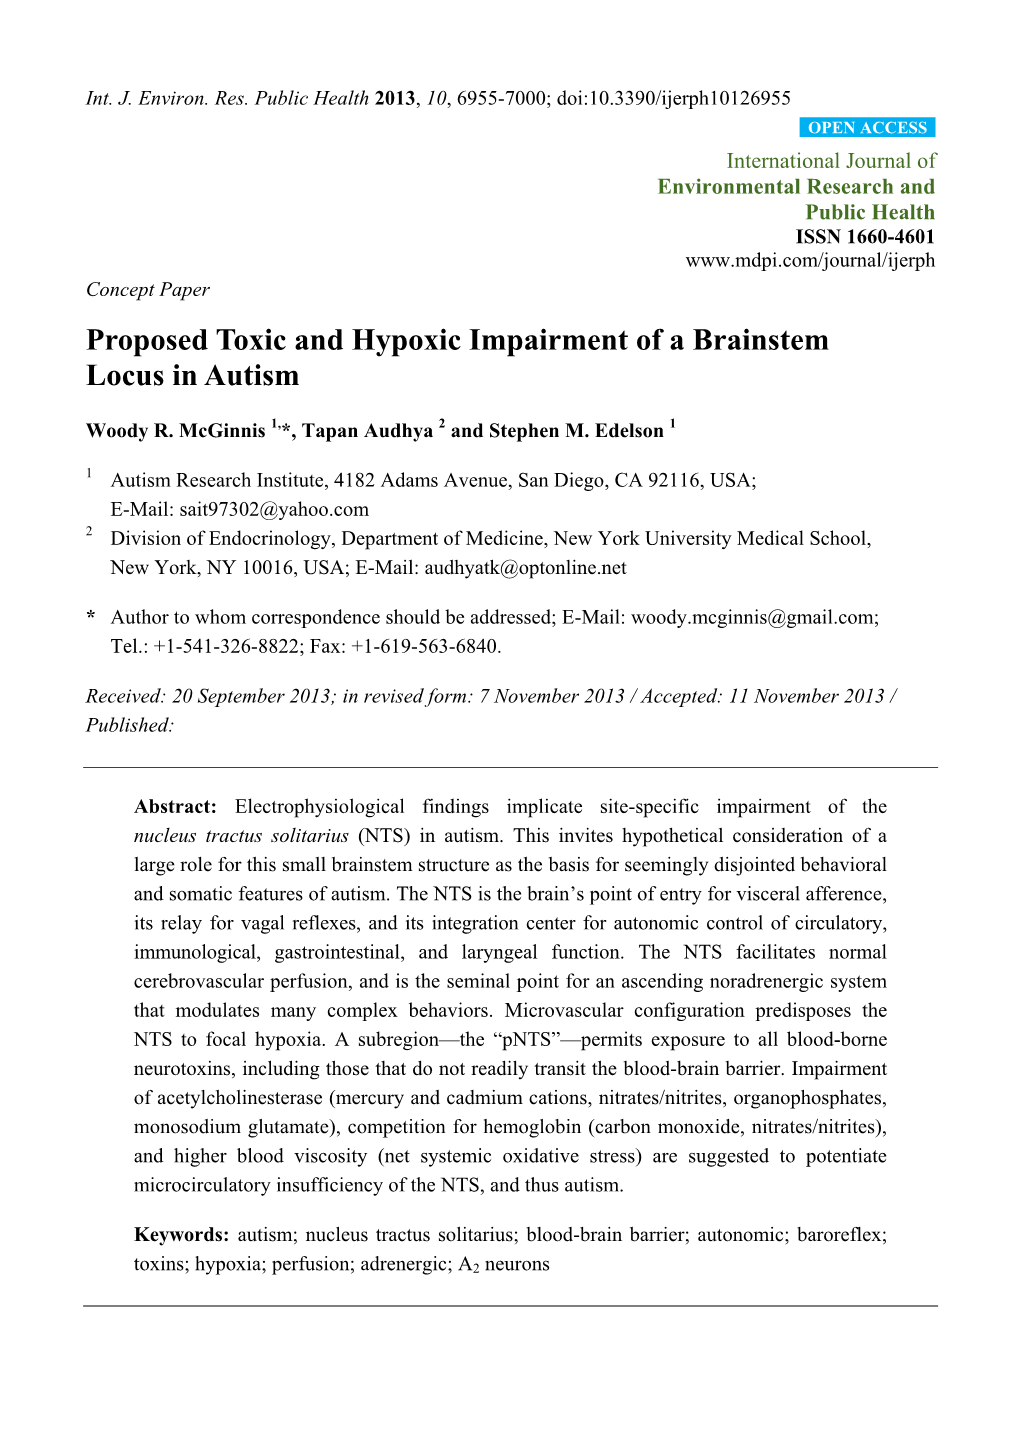 Proposed Toxic and Hypoxic Impairment of a Brainstem Locus in Autism